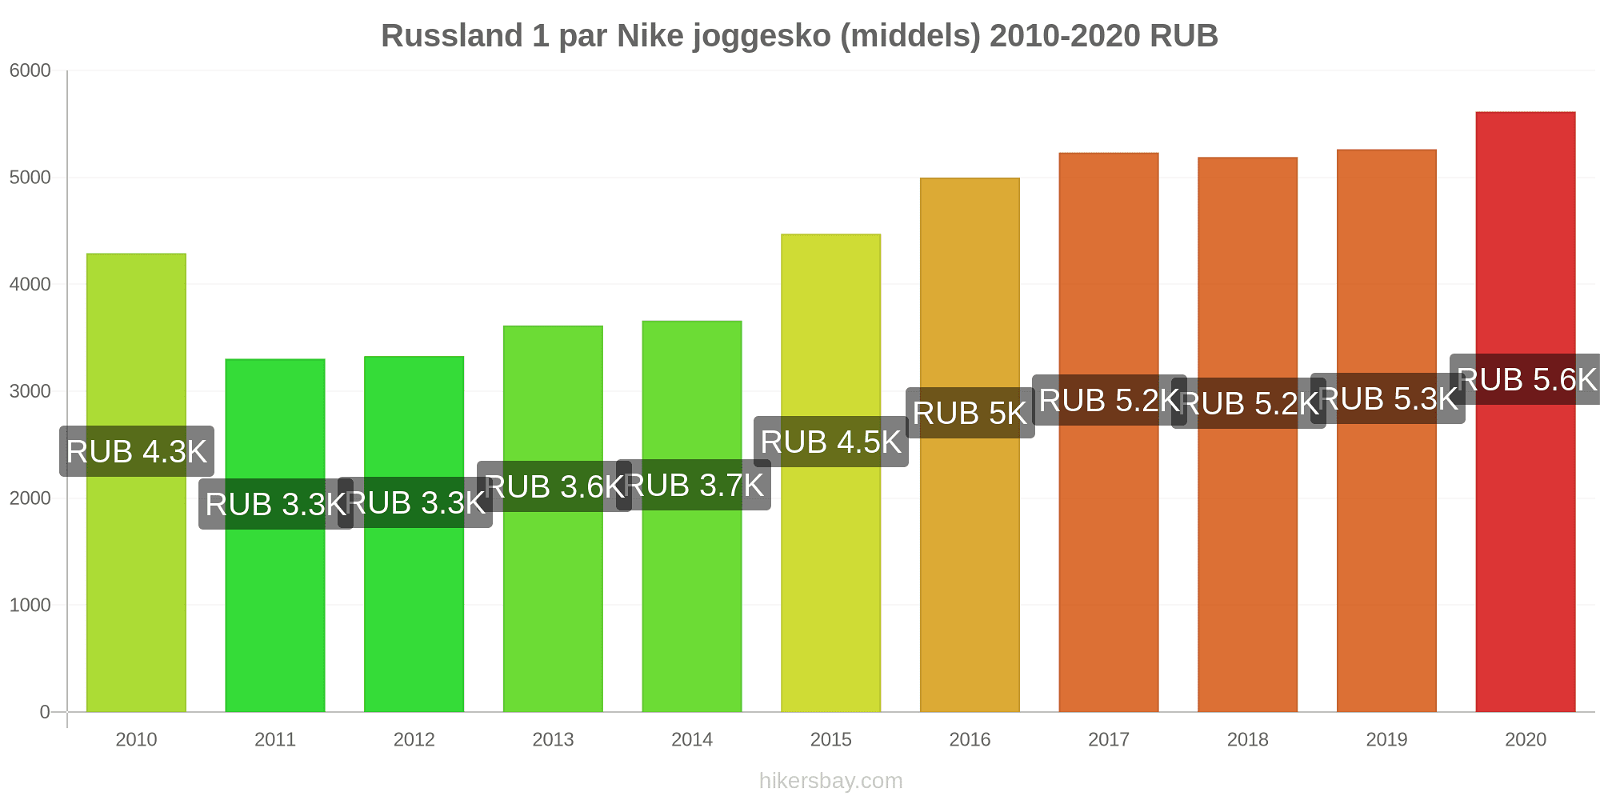 Russland prisendringer 1 par Nike joggesko (middels) hikersbay.com